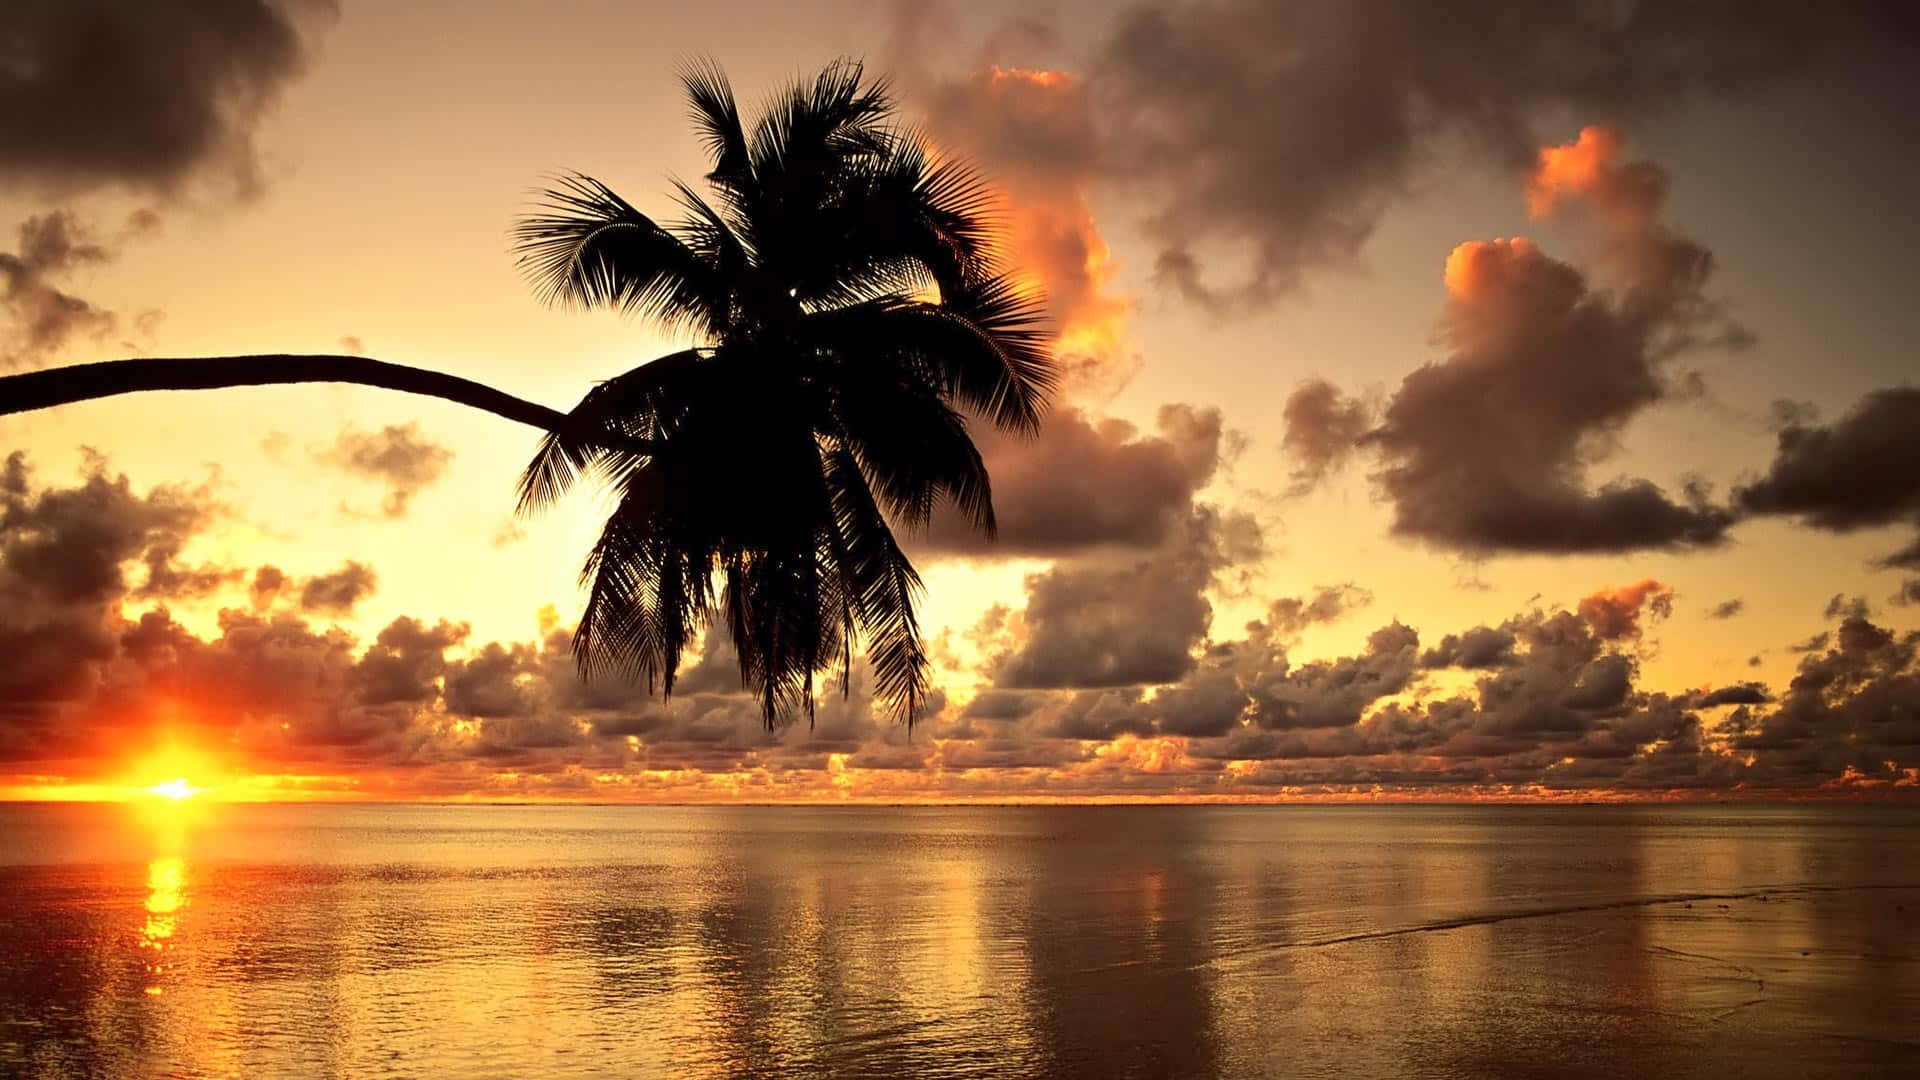 Enjoying a Magical Hawaii Sunset Wallpaper